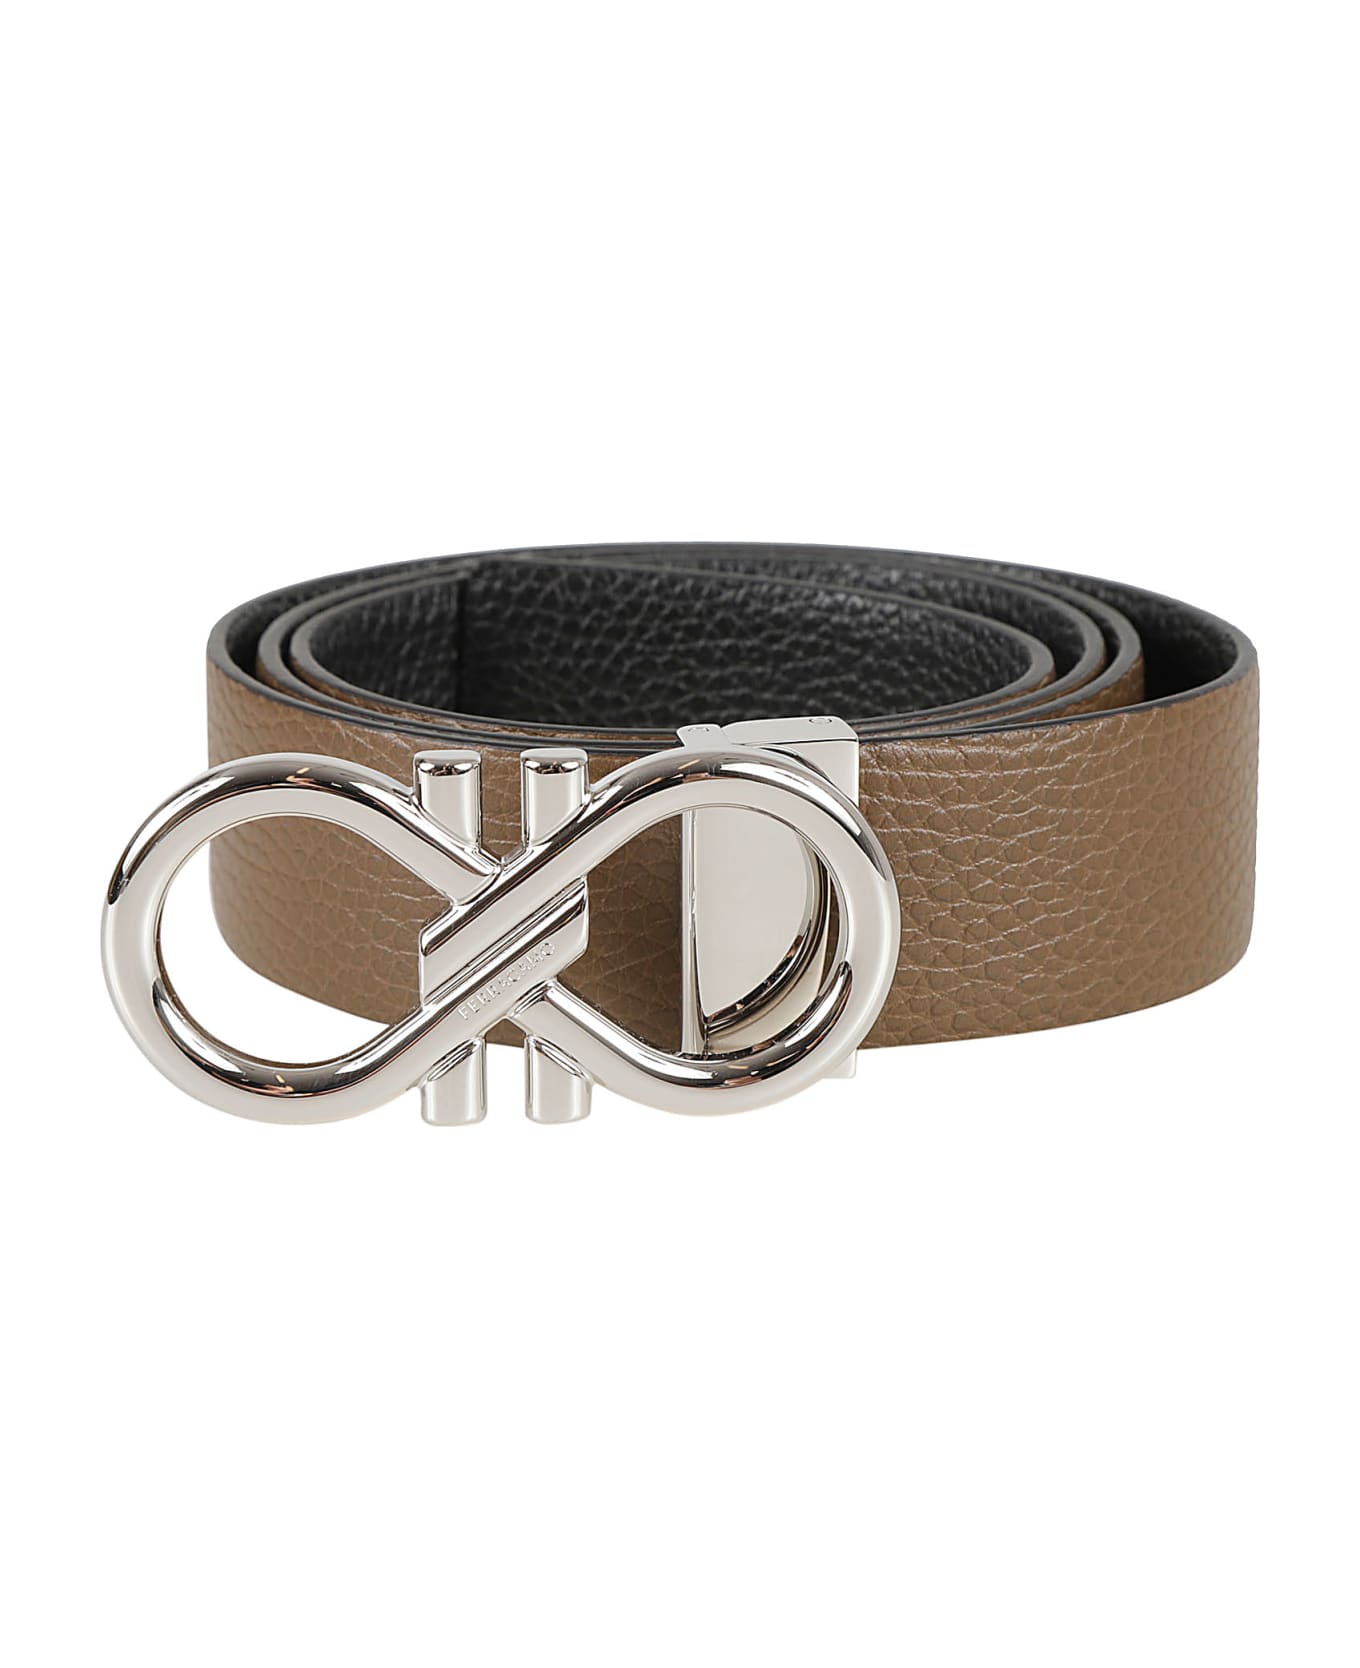 Ferragamo Infinity Buckled Belt - Brown